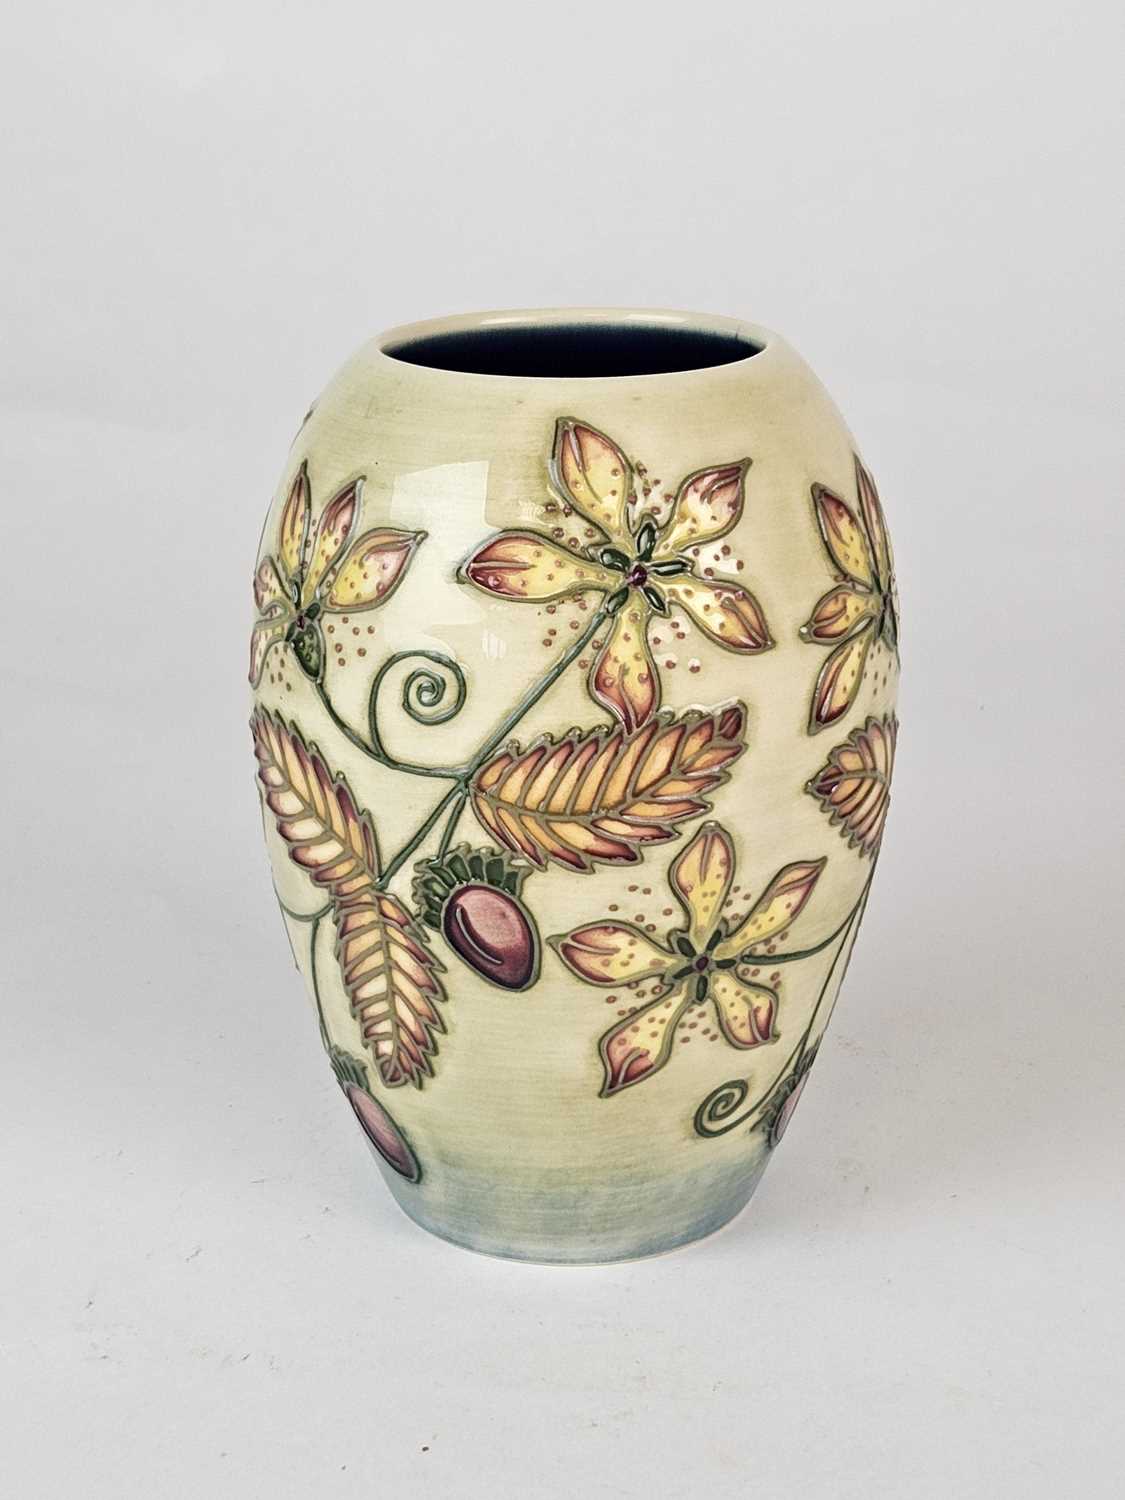 Moorcroft 'Serviceberry' vase designed by Nicola Slaney - Image 2 of 3